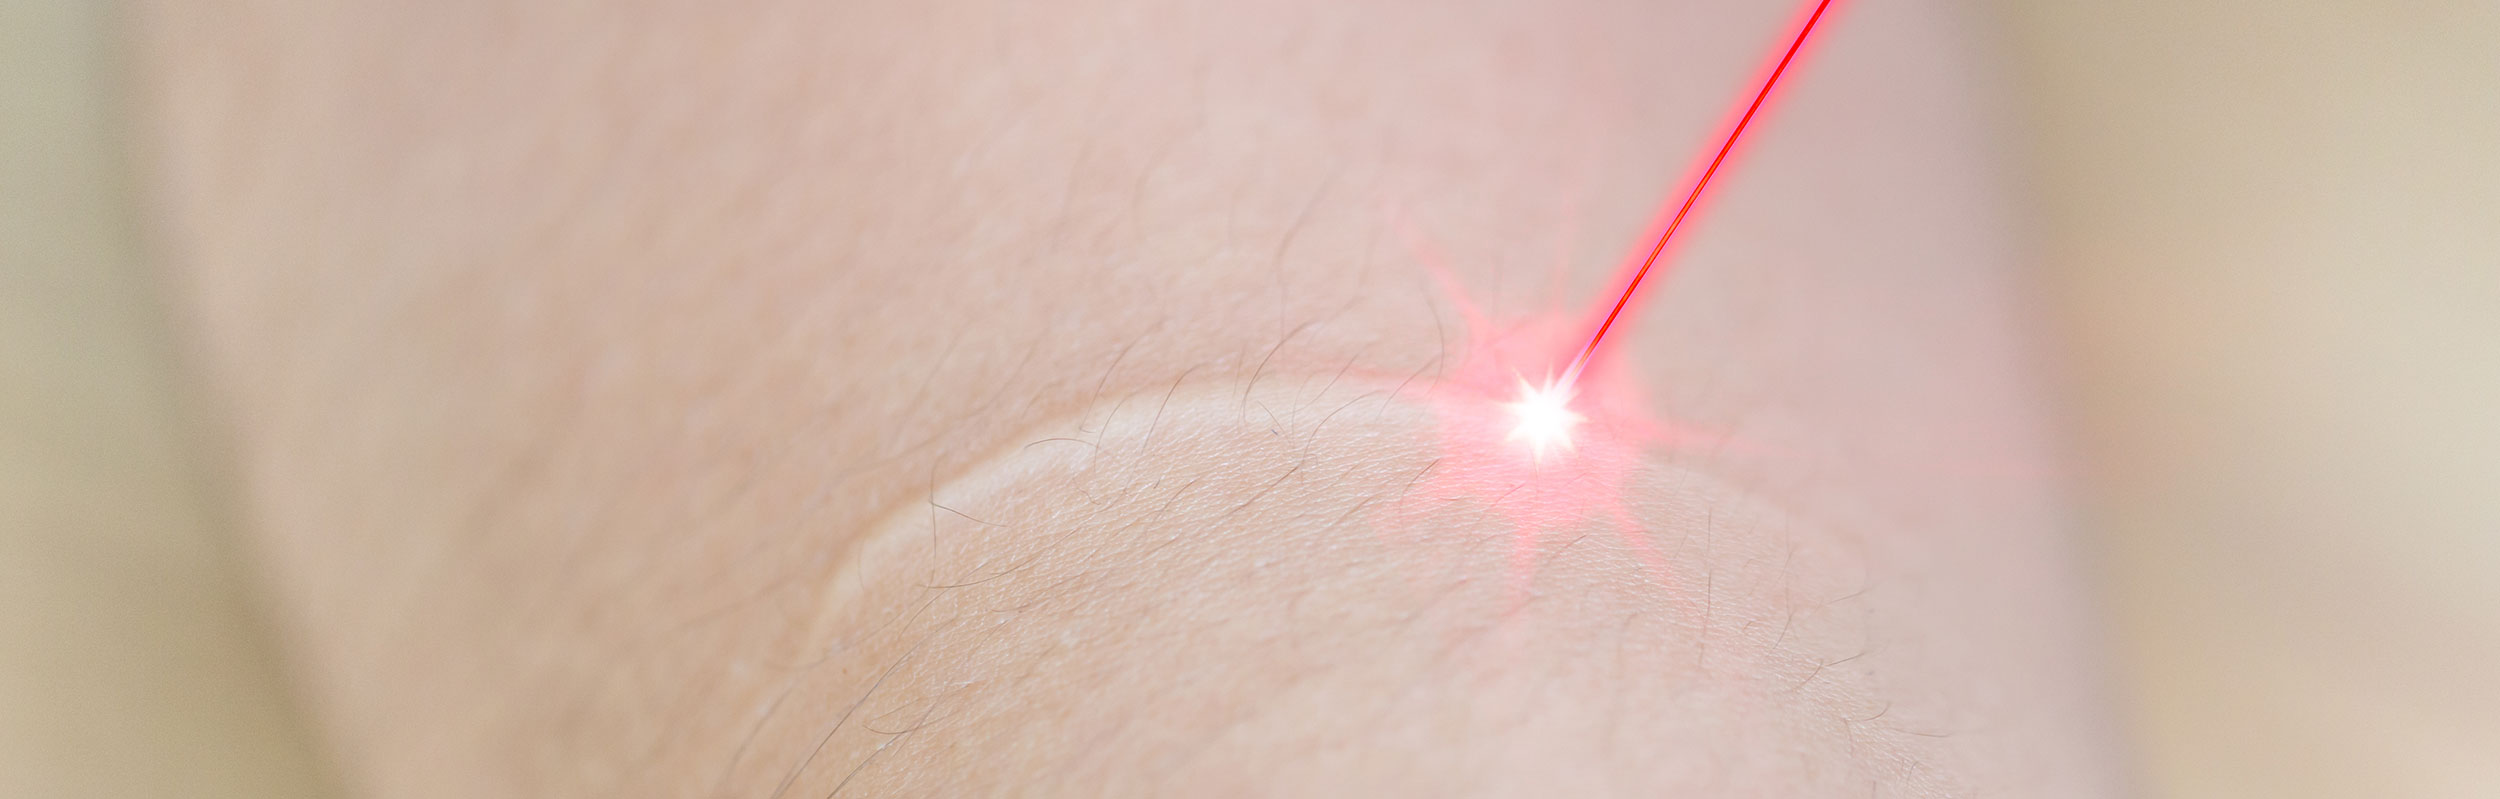 Traitement laser des cicatrices à Rouen - Dr Pellerin